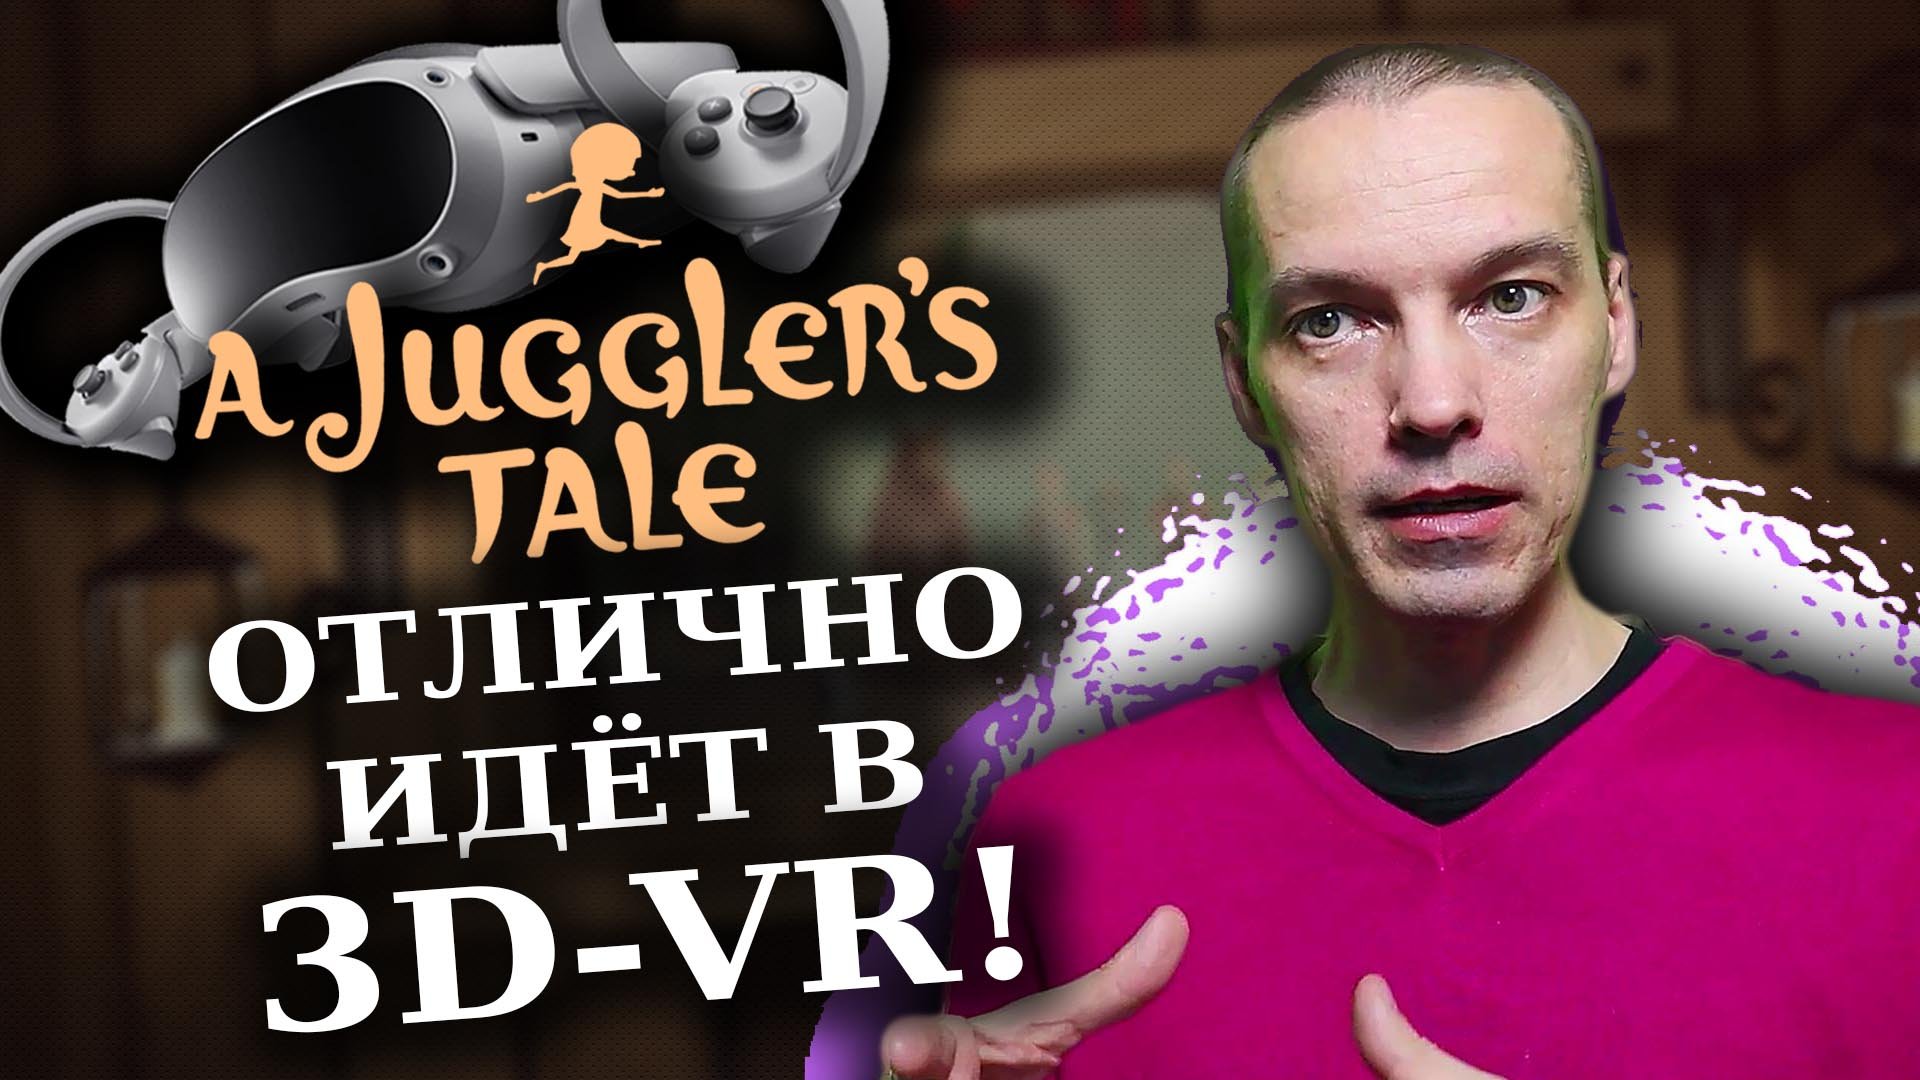 ВПЕЧАТЛЕНИЯ ОТ ИГРЫ "A JUGGLERS TALE" В VR-3D С PICO 4!